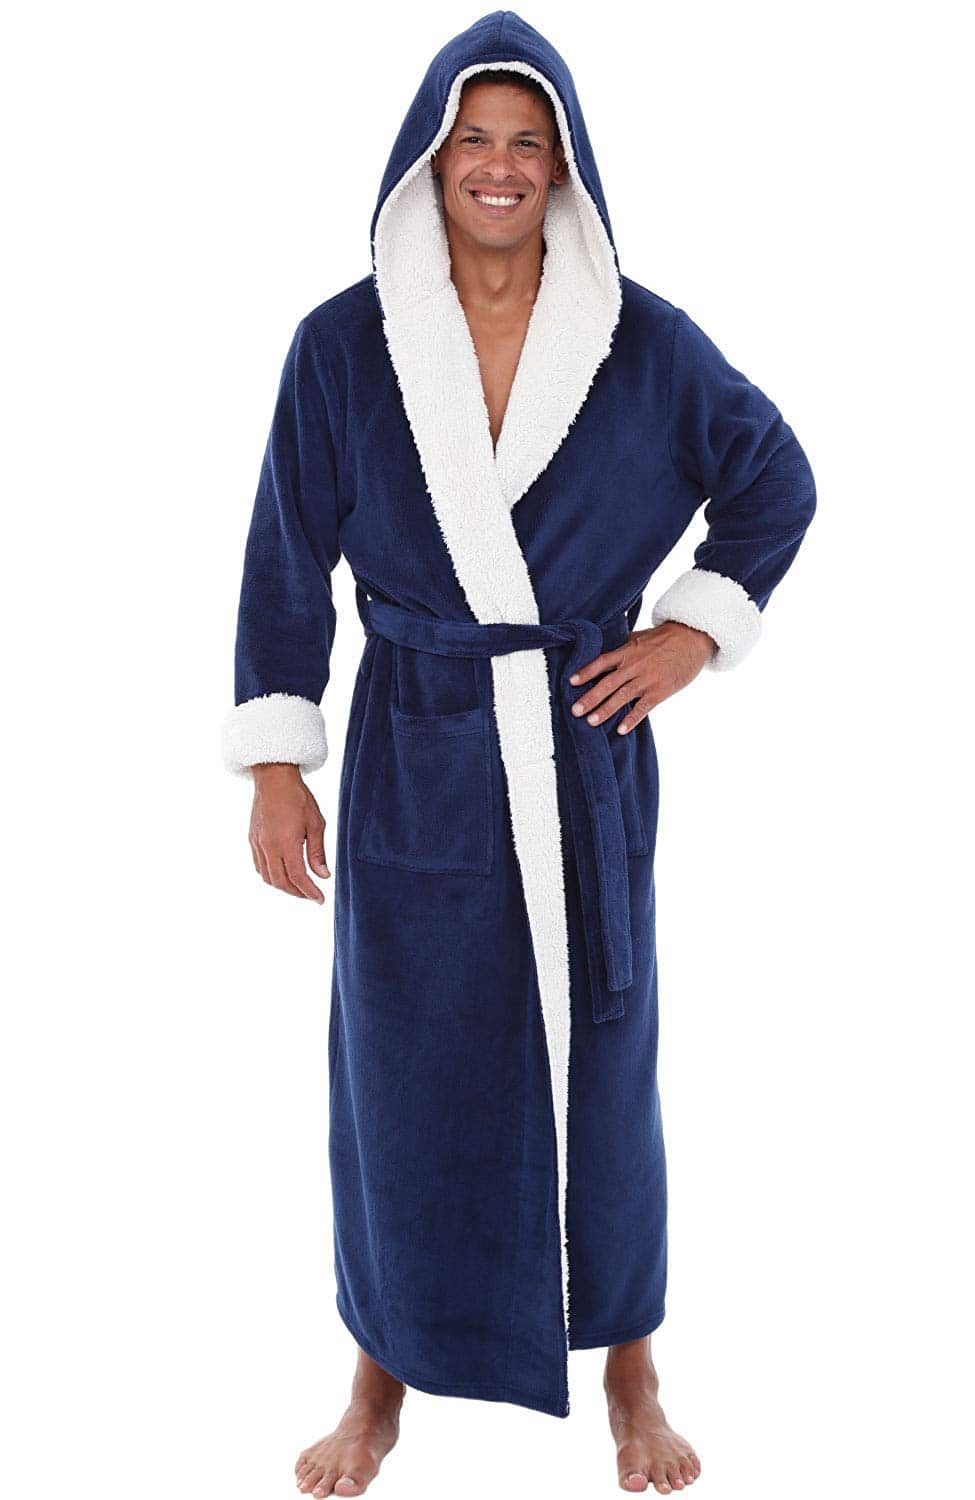 Best Mens Robes 2022: Hooded Bathrobe for Men